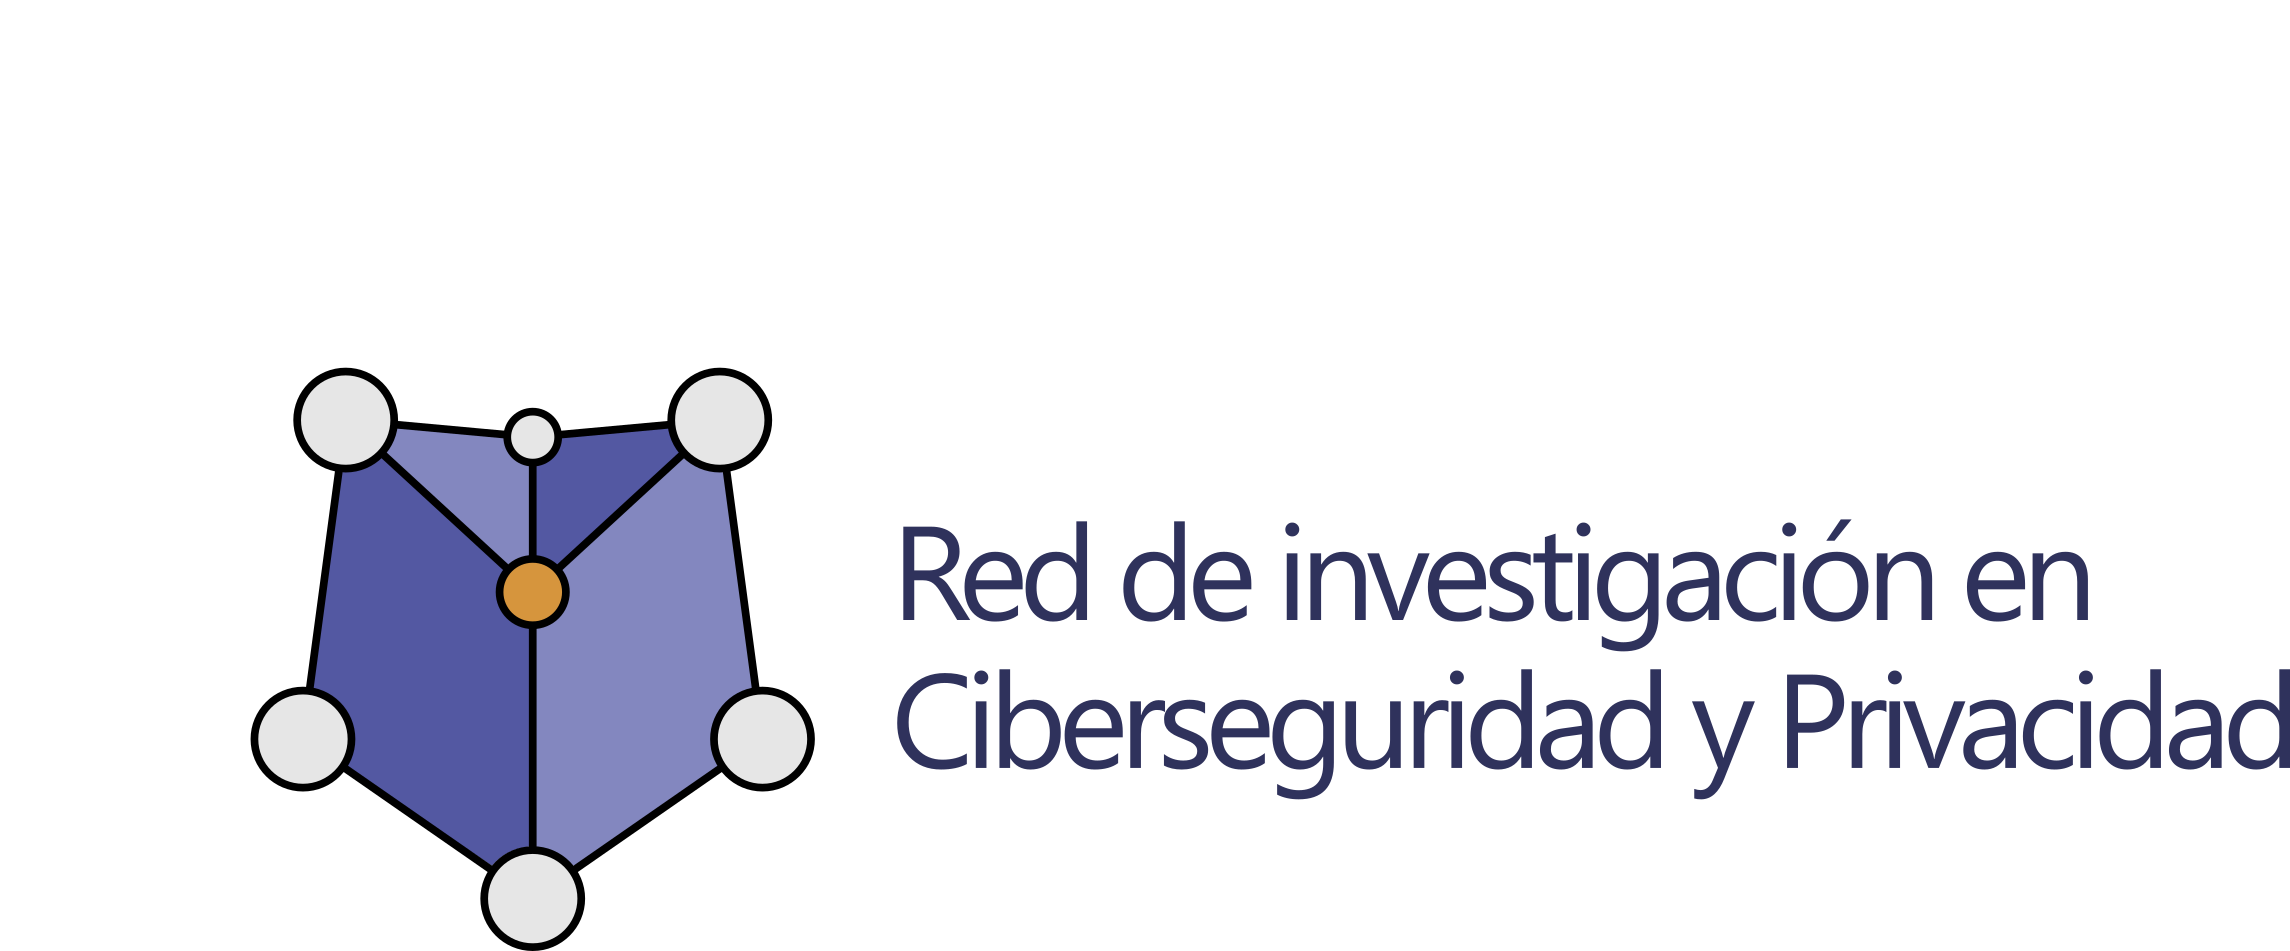 Red de investigación en Ciberseguridad y Privacidad